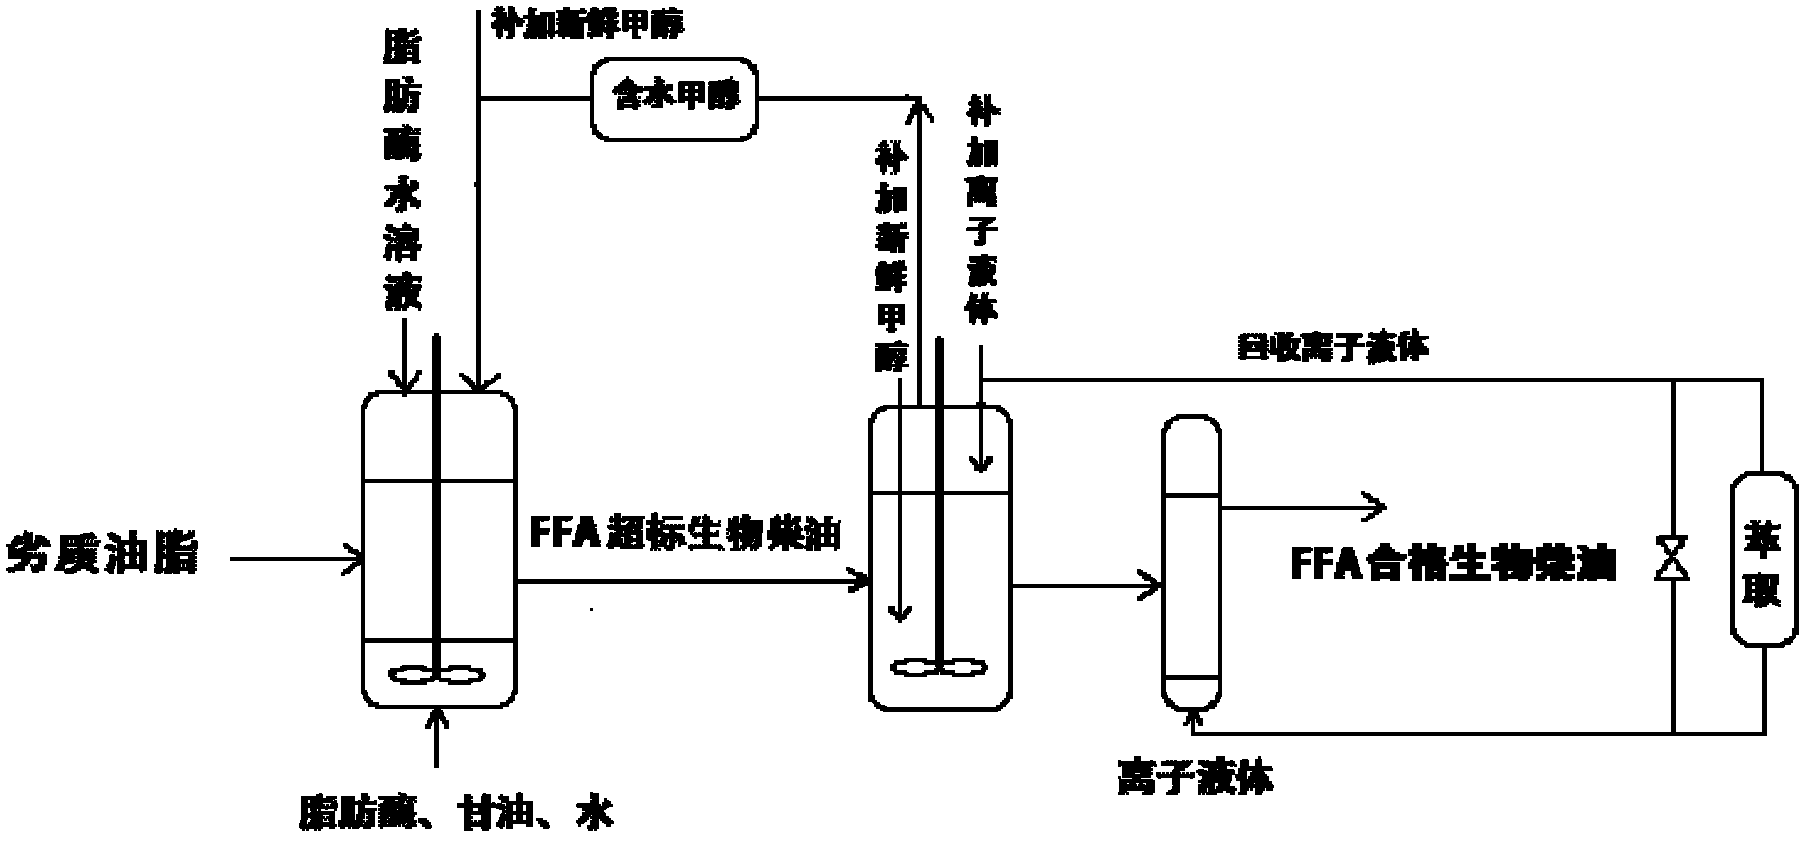 Biodiesel preparation method